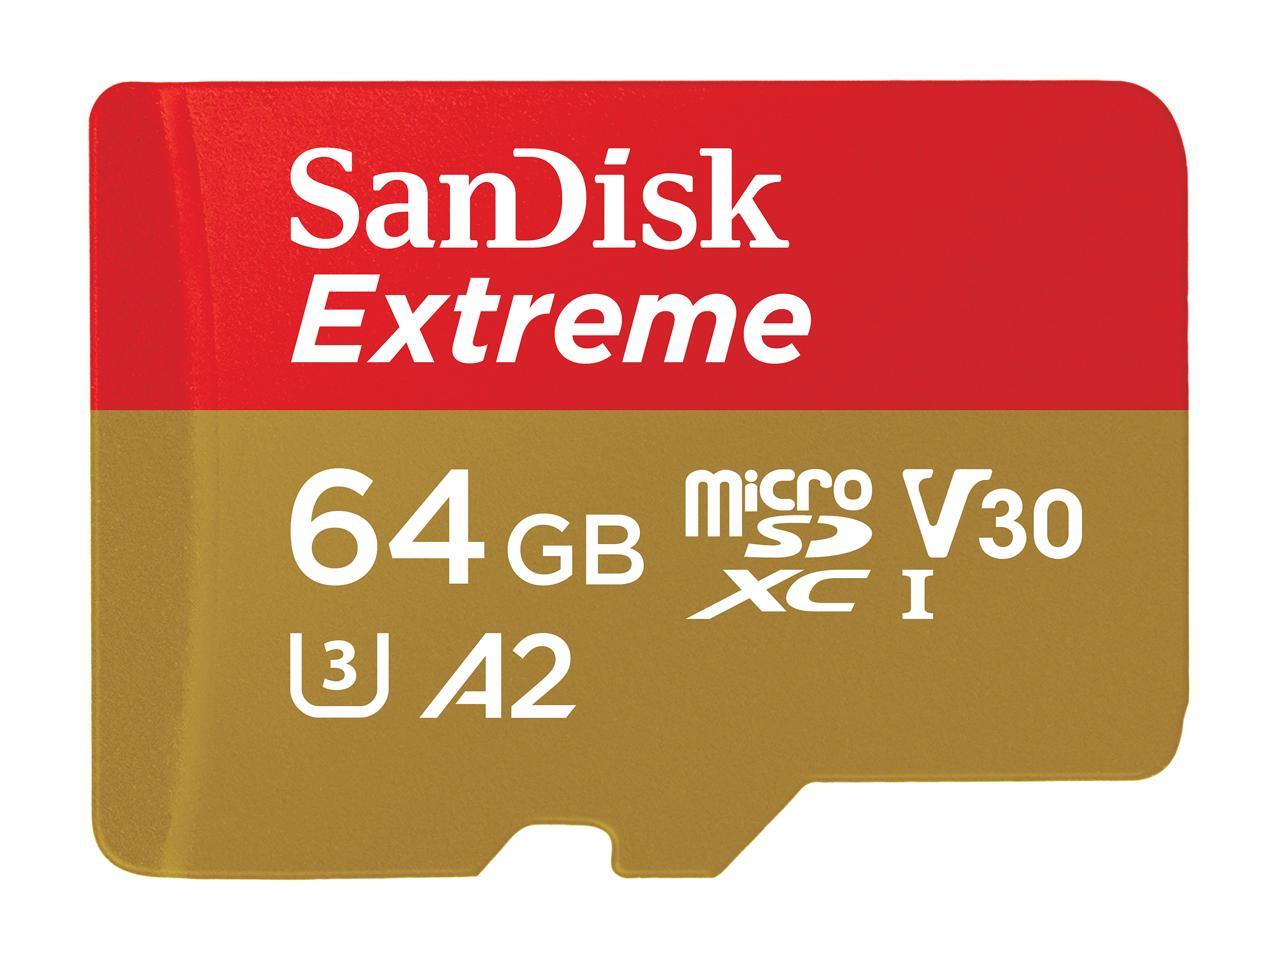 Carte Mémoire microSDXC SanDisk Extreme 64 Go Adaptateur SD avec Performances Applicatives A2 jusquà 160 Mo/s & Clé USB 3.0 SanDisk Ultra 64 Go avec une vitesse de lecture allant jusquà 100 Mo/s